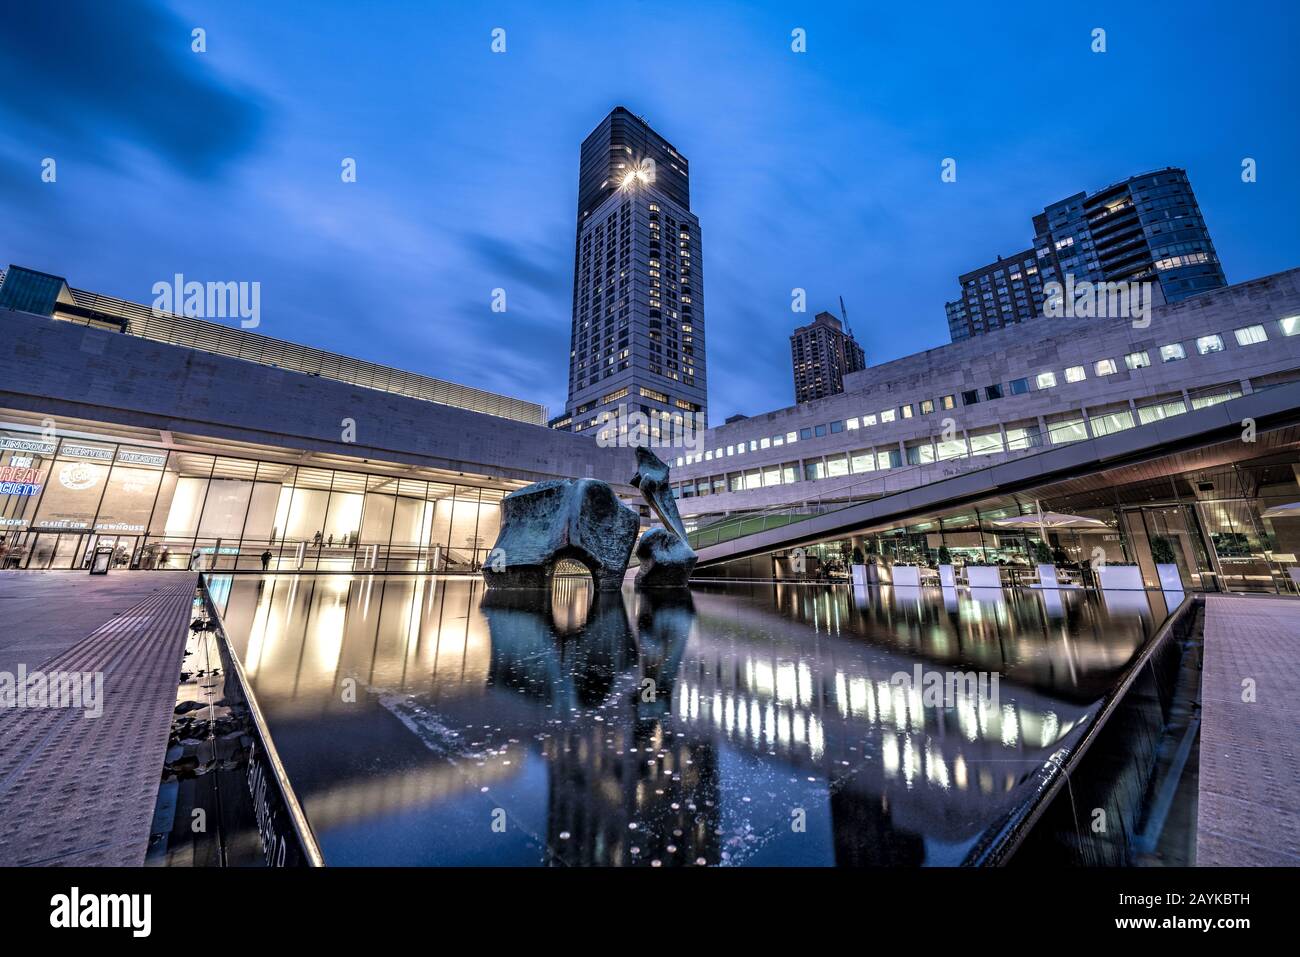 New YORK, USA - 09. OKTOBER: Dies ist eine Abendansicht des Lincoln Center for the Performing Arts, eines berühmten Zentrums in Manhattan am 09. Oktober 2019 Stockfoto